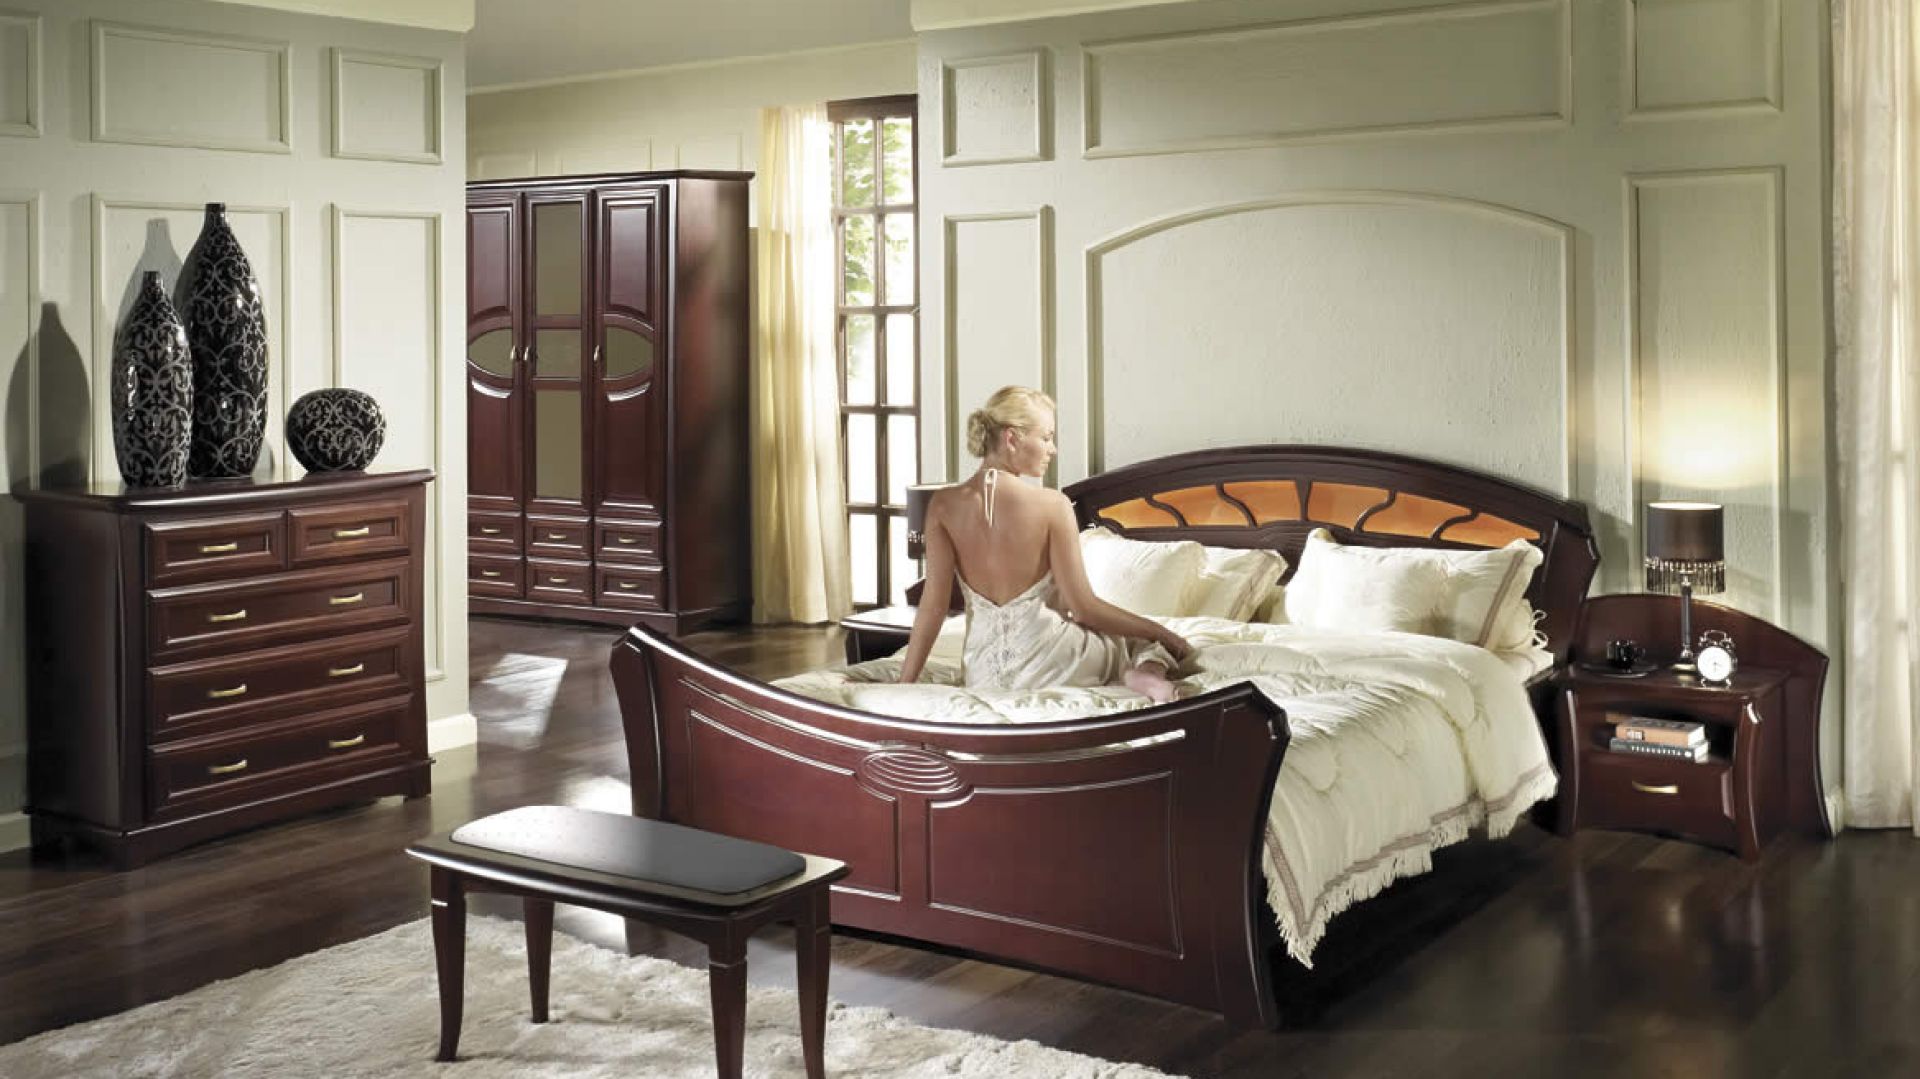 Szafy w kolorach drewna - jak zaaranżować komfortową sypialnię?